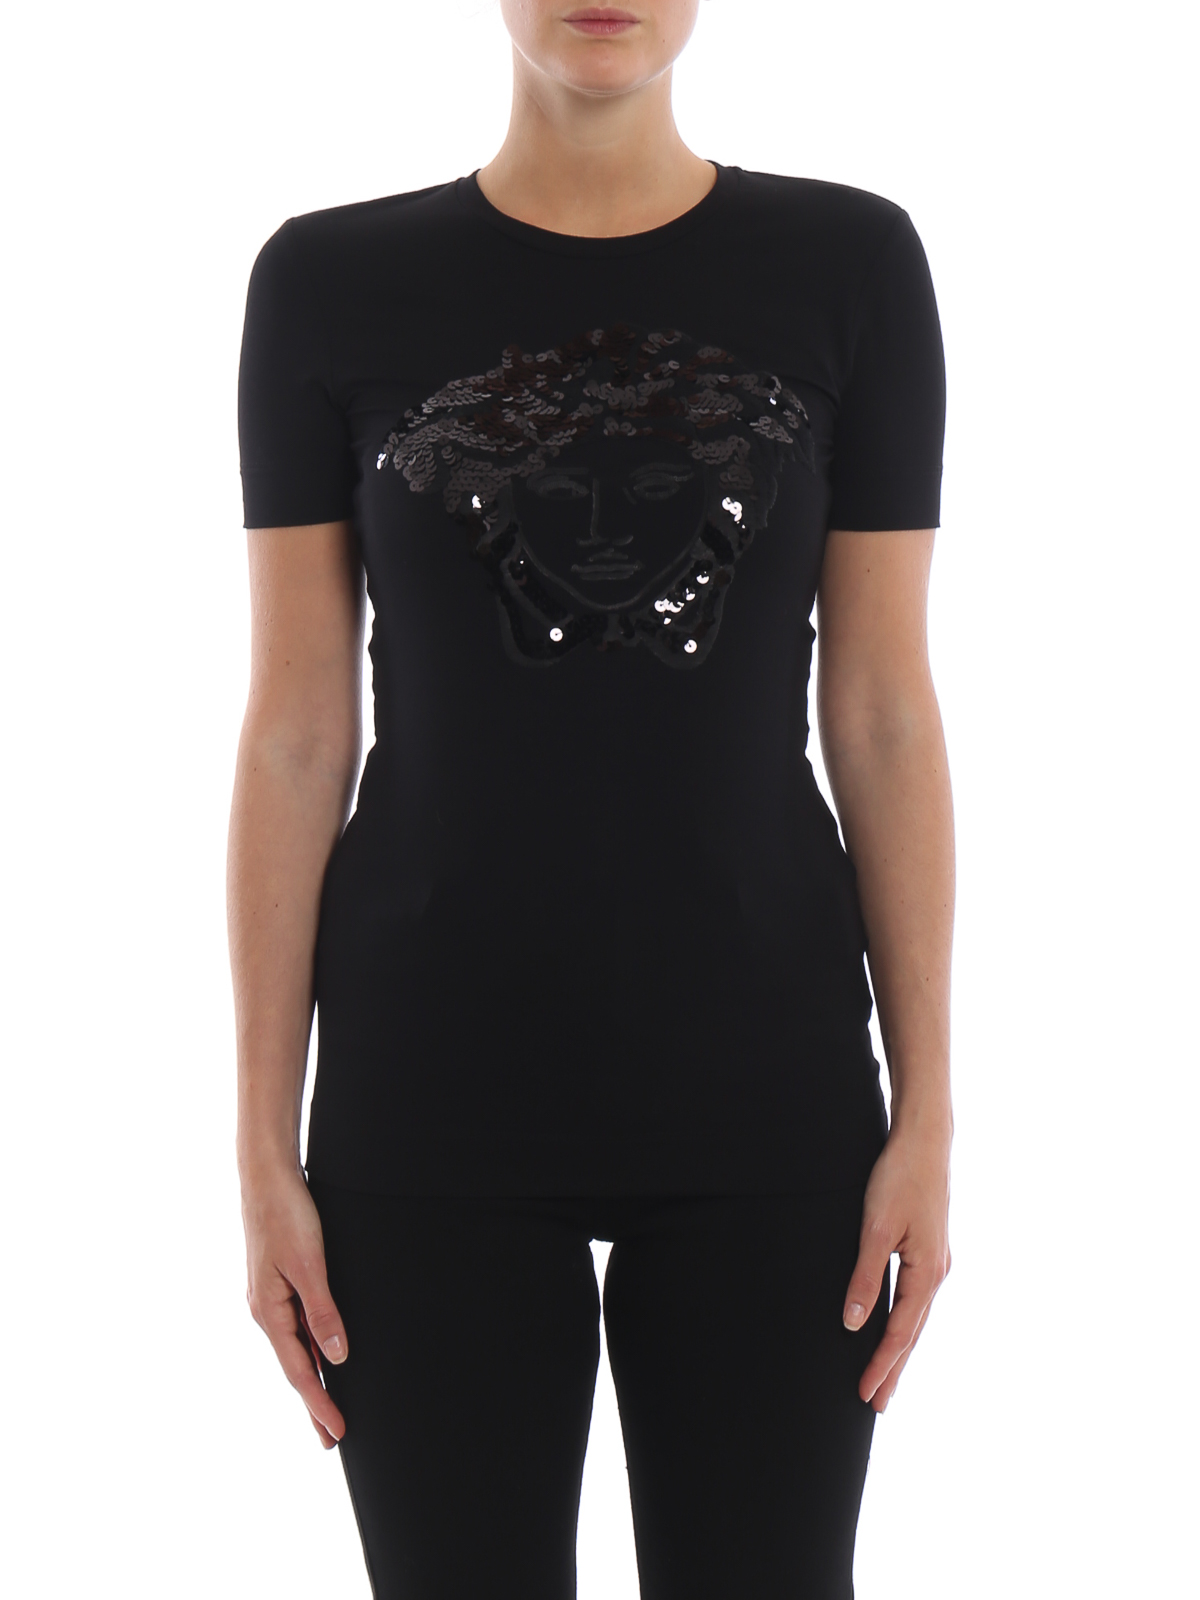 Versace | VERSACE 女士黑色棉质短袖T恤 A80599-A213311-A1008商品图片,独家减免邮费